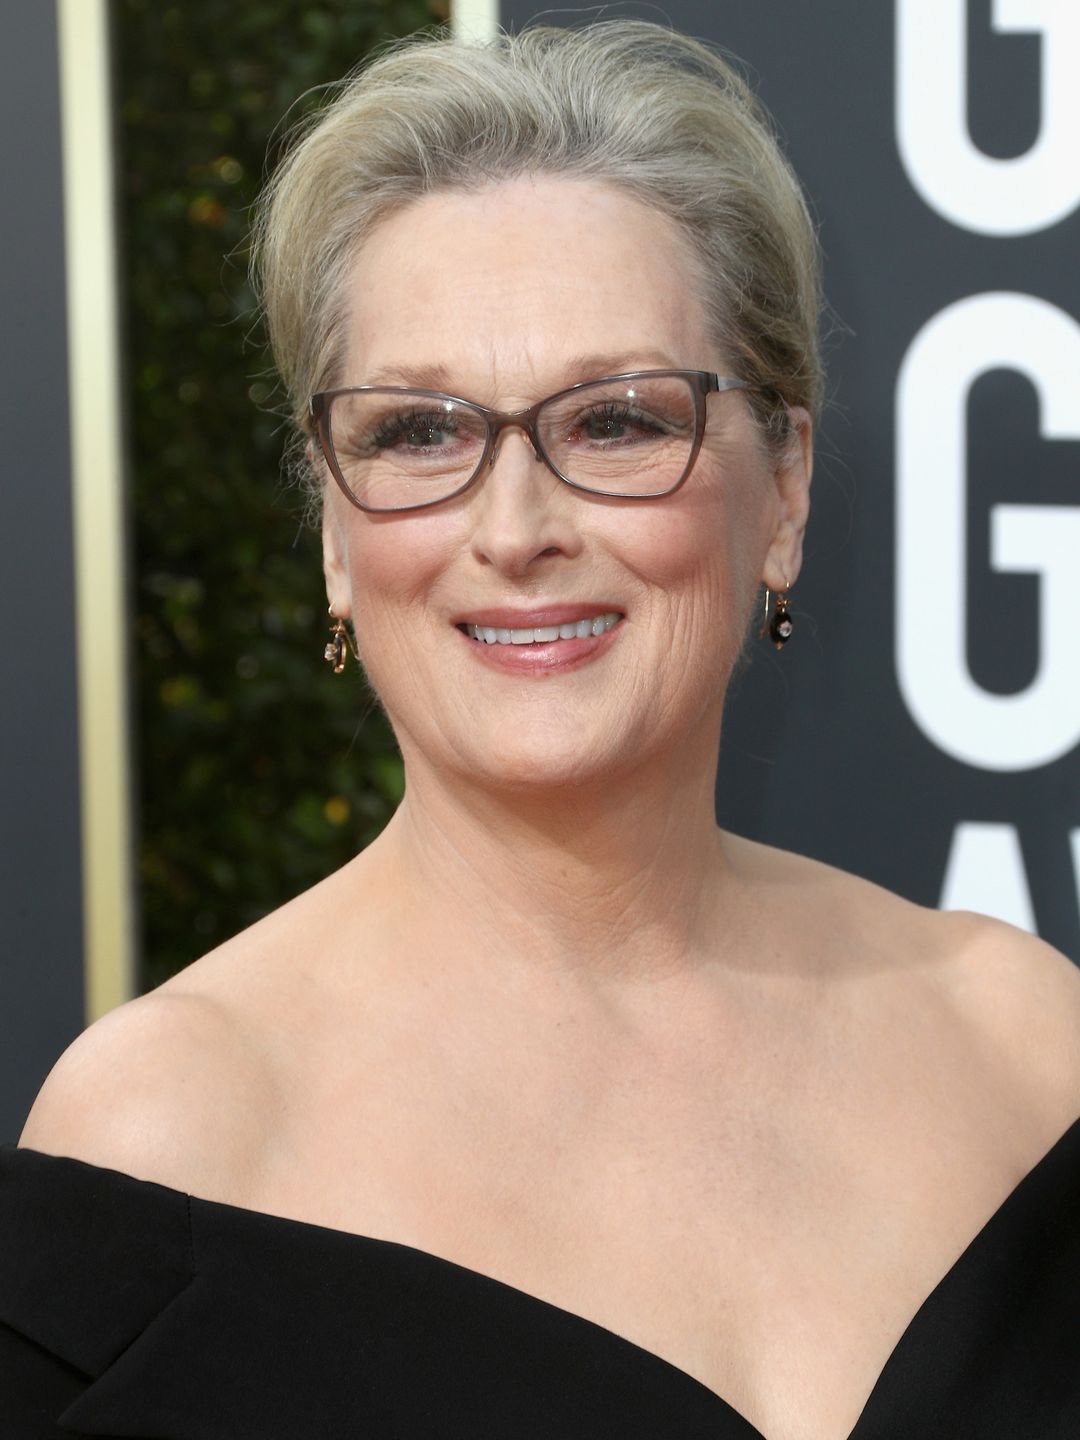 Meryl Streep education